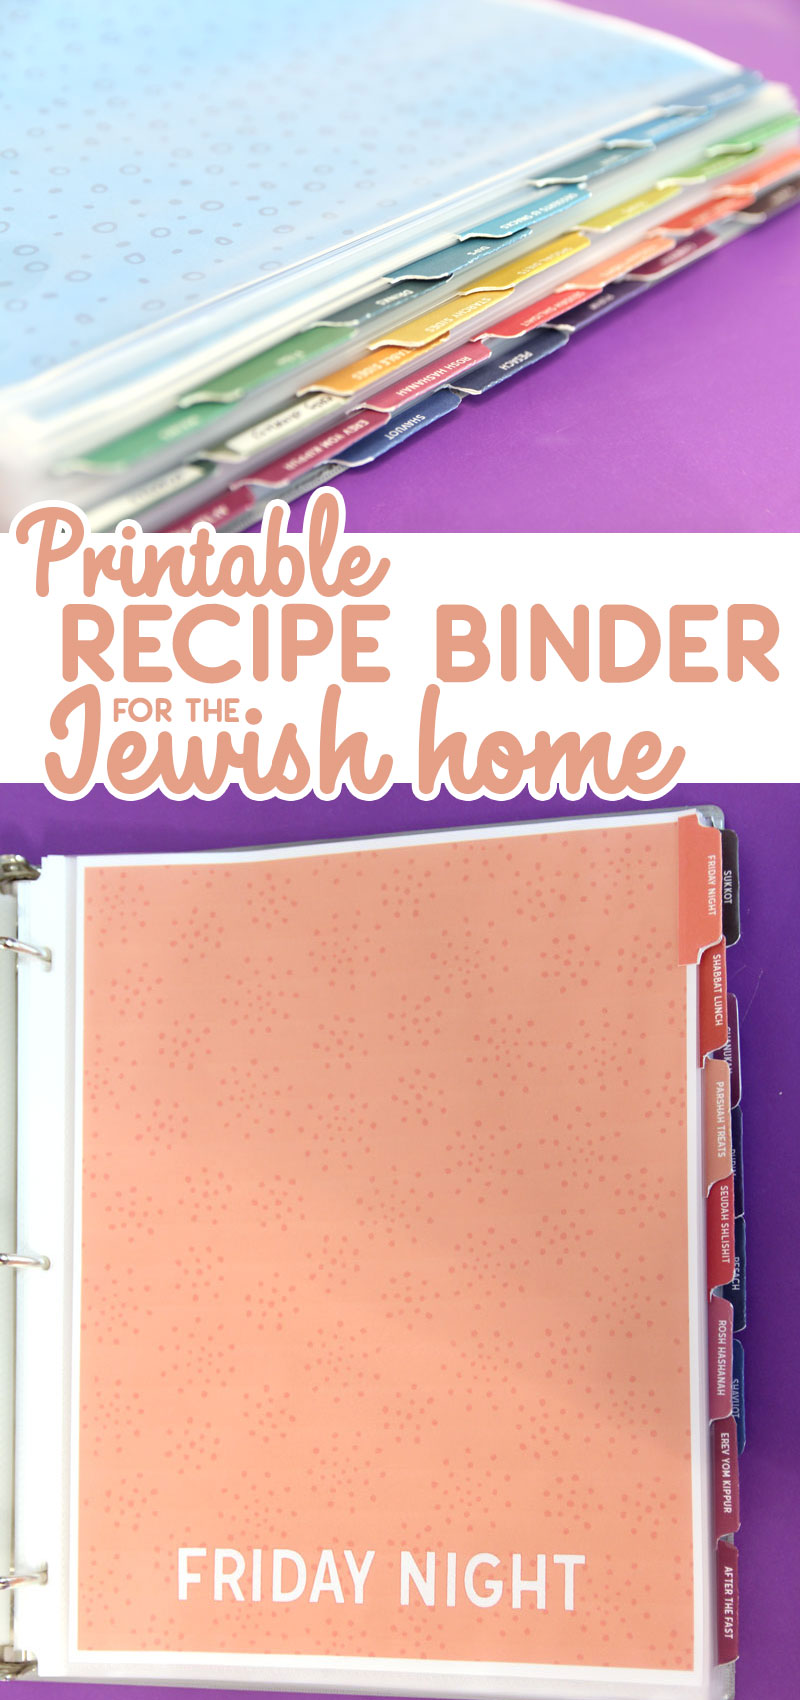 jewish recipe binder collage image